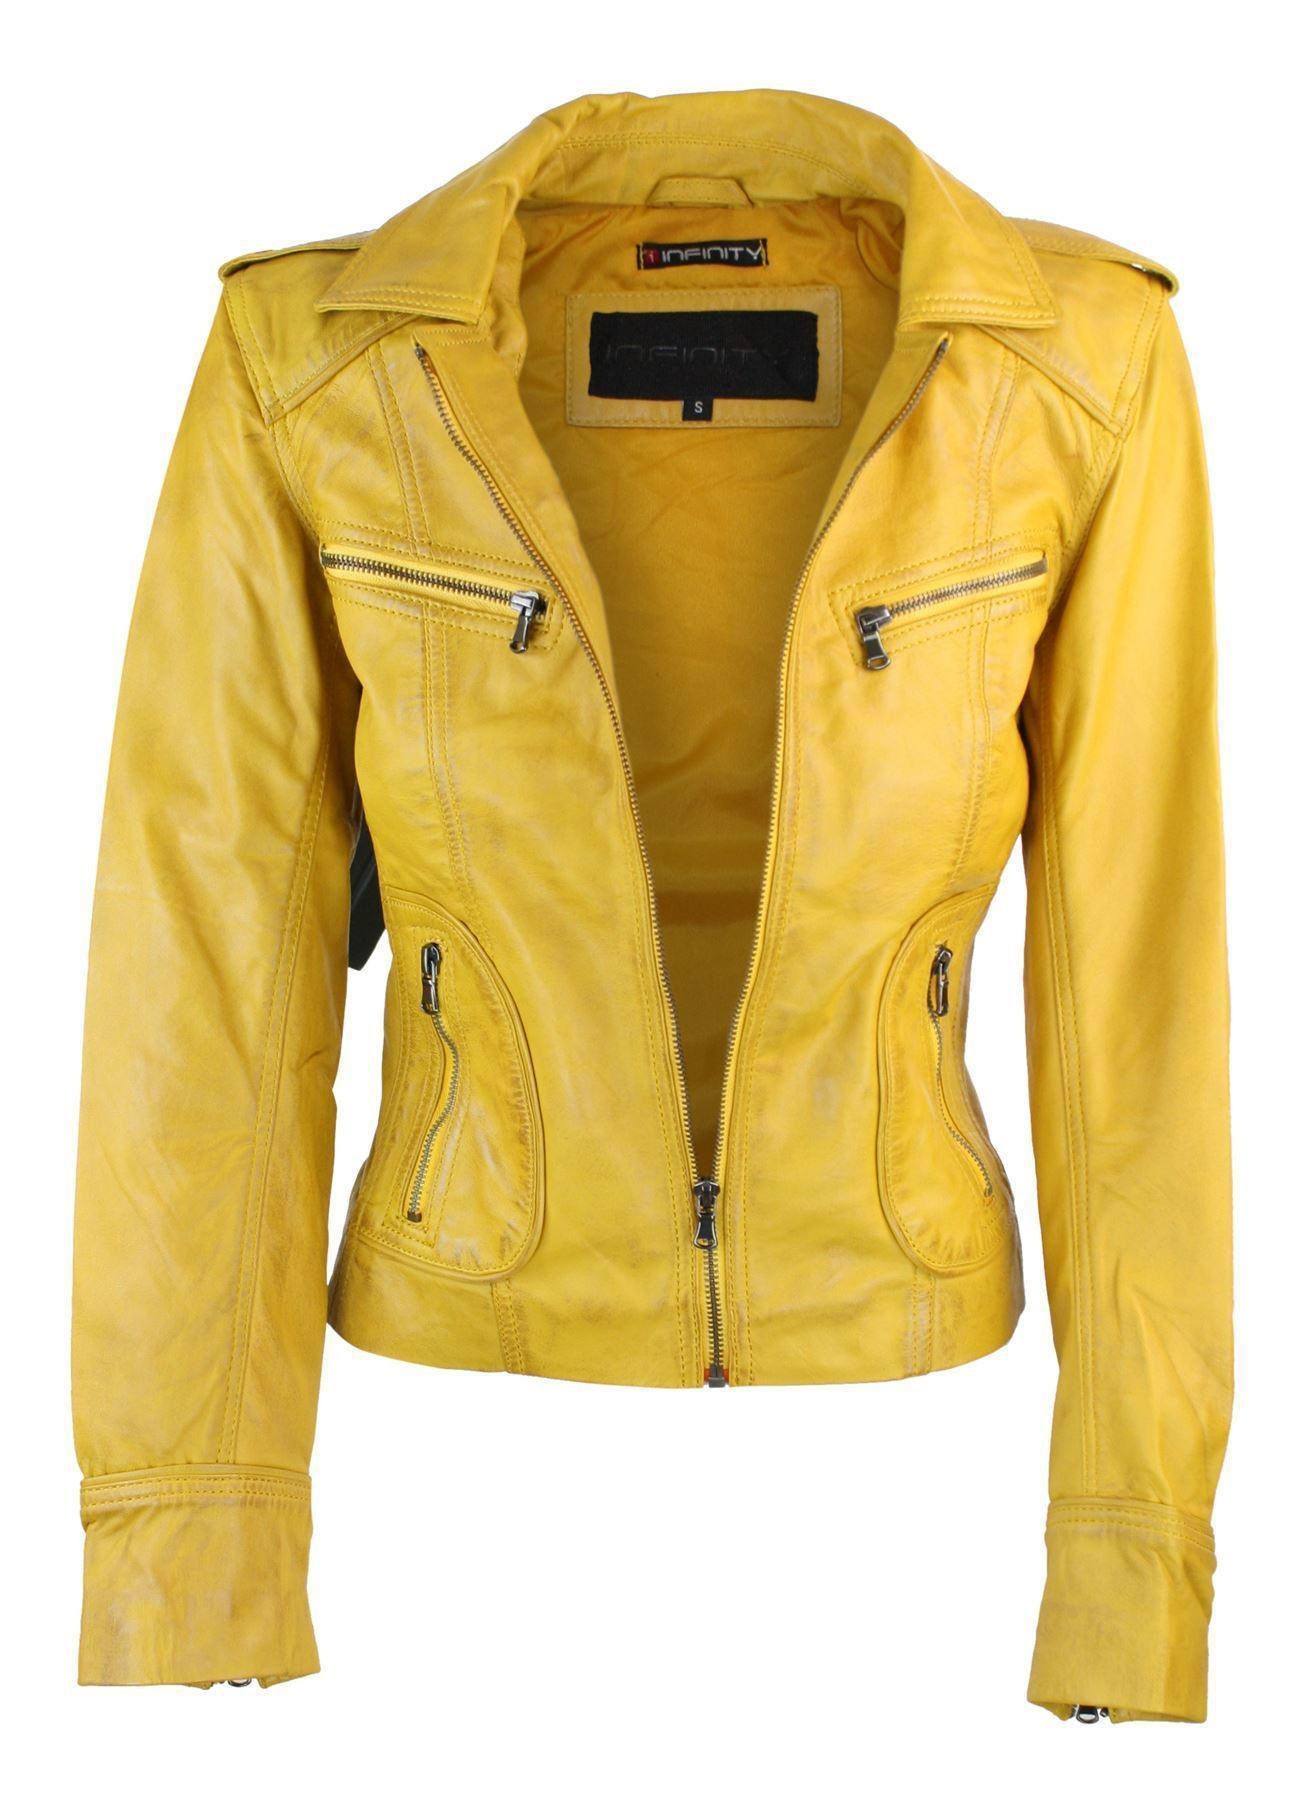 Ladies Real Leather Black or Yellow Biker Style Fashion Jacket - Etsy UK